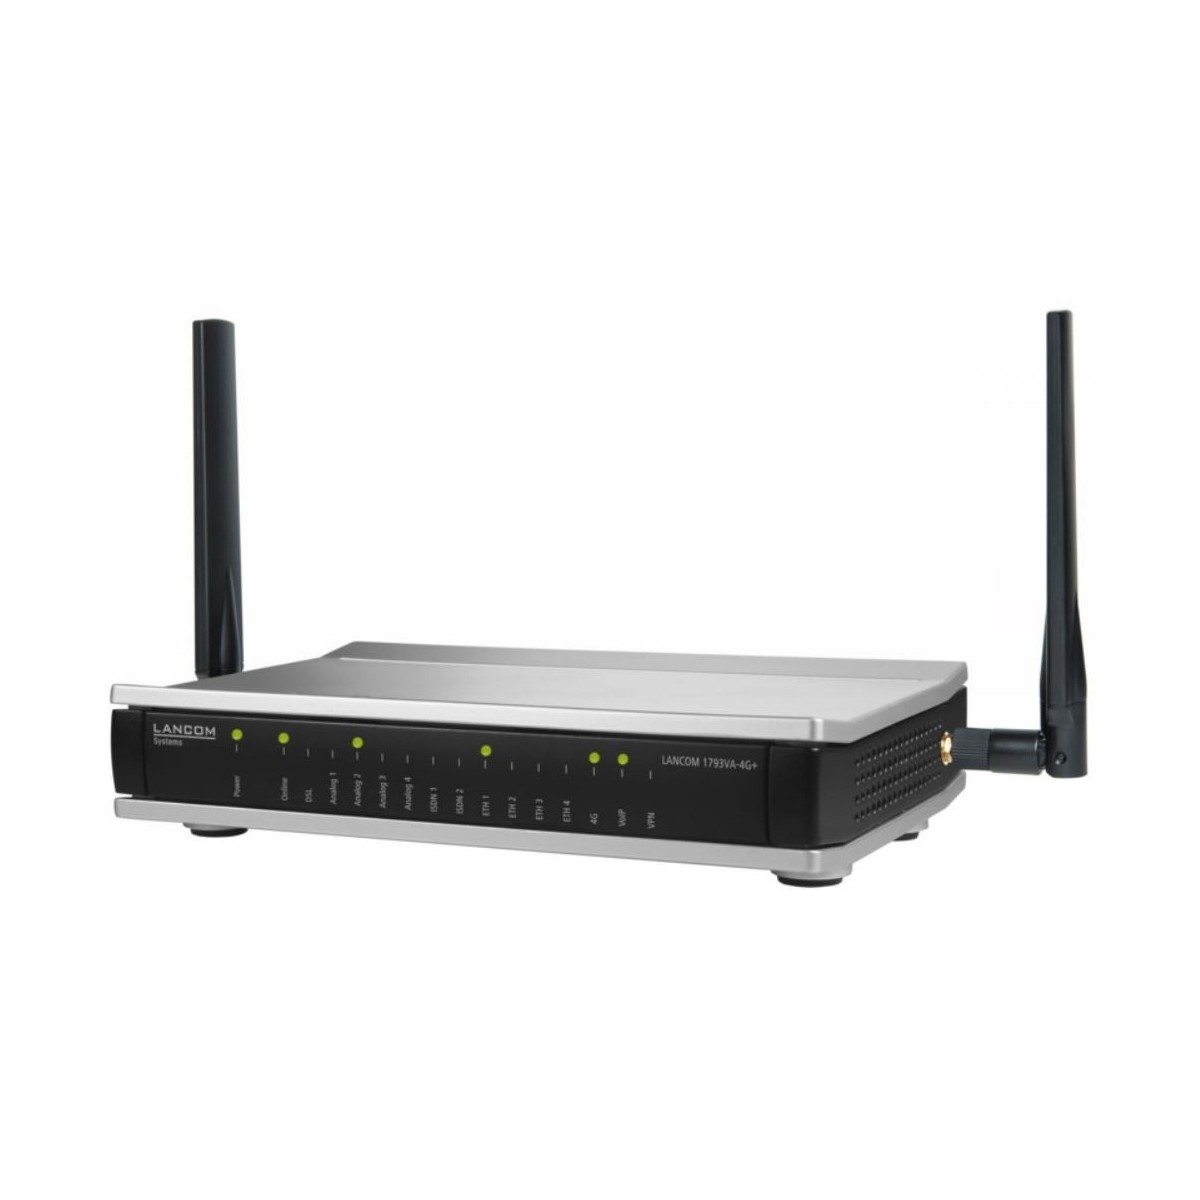 Lancom 1793VA-4G+ EU Powerful business VoIP router with VDSL2/ADSL2+ modem Annex A/B/J/M - Router - VOIP